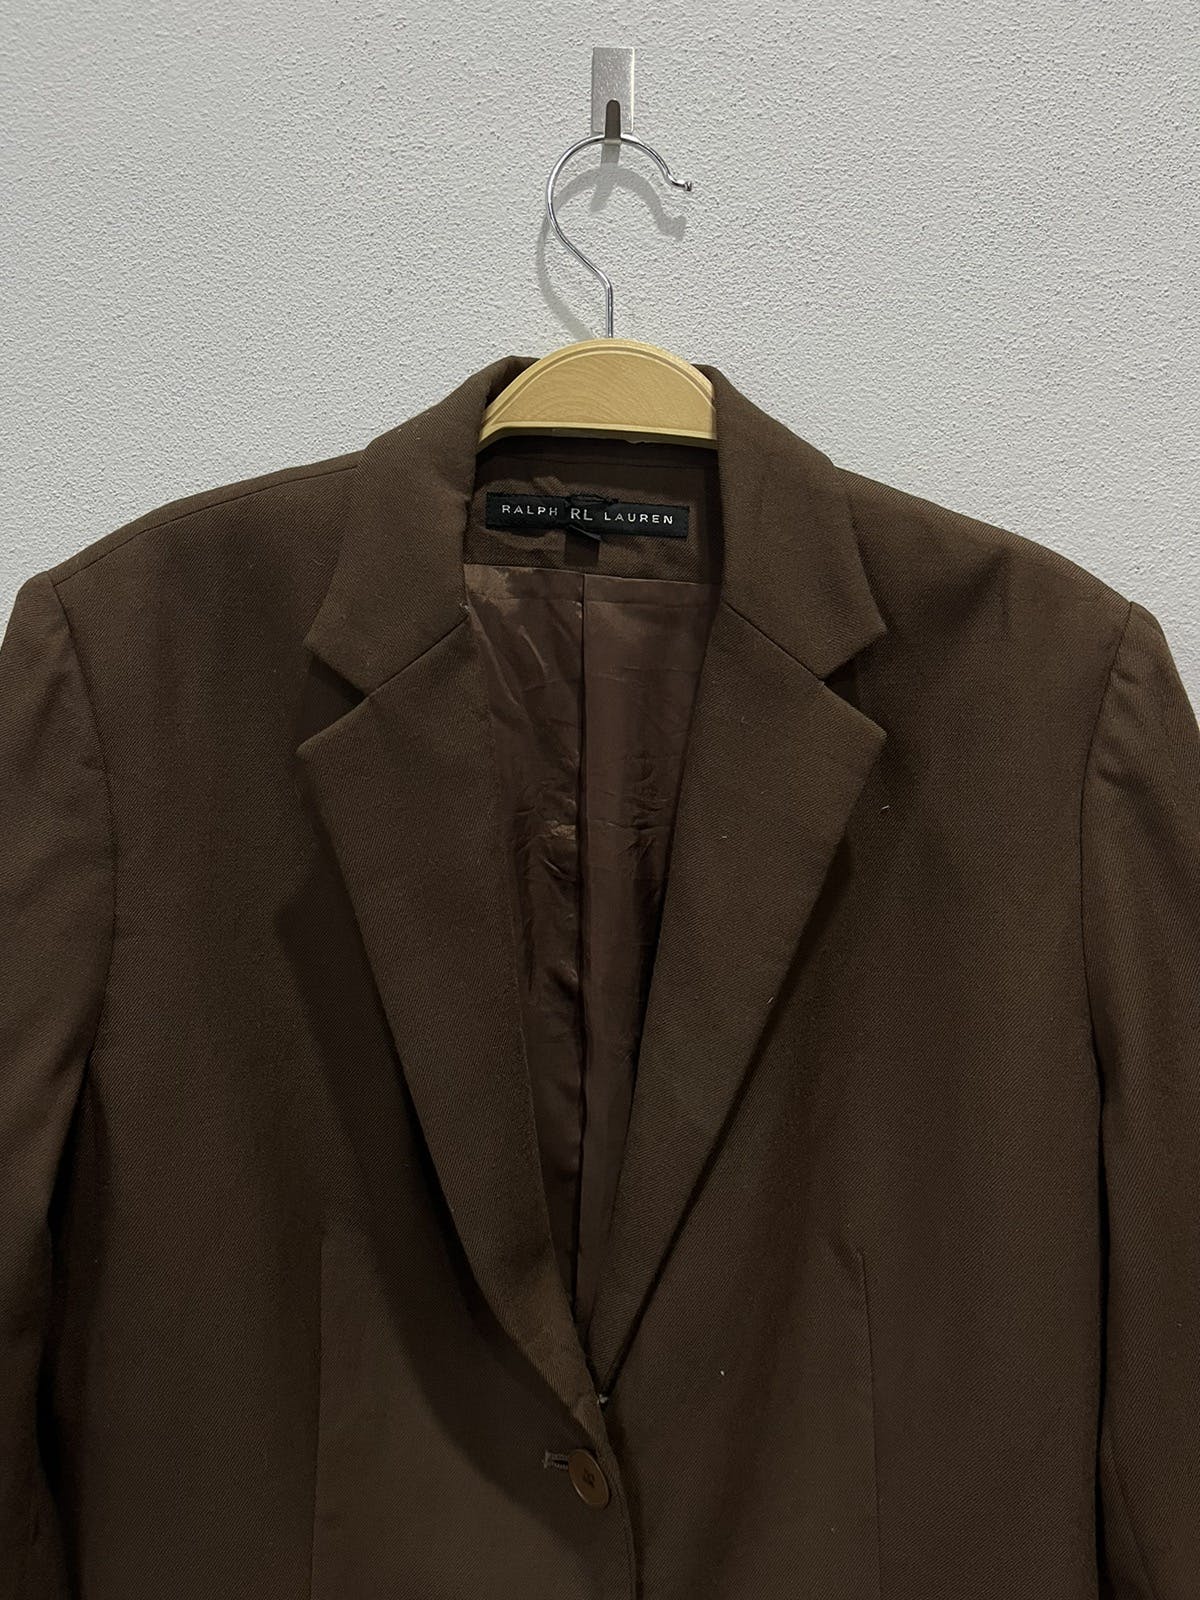 Ralph Lauren Outer Shell Wool Blazer/Jacket - 3